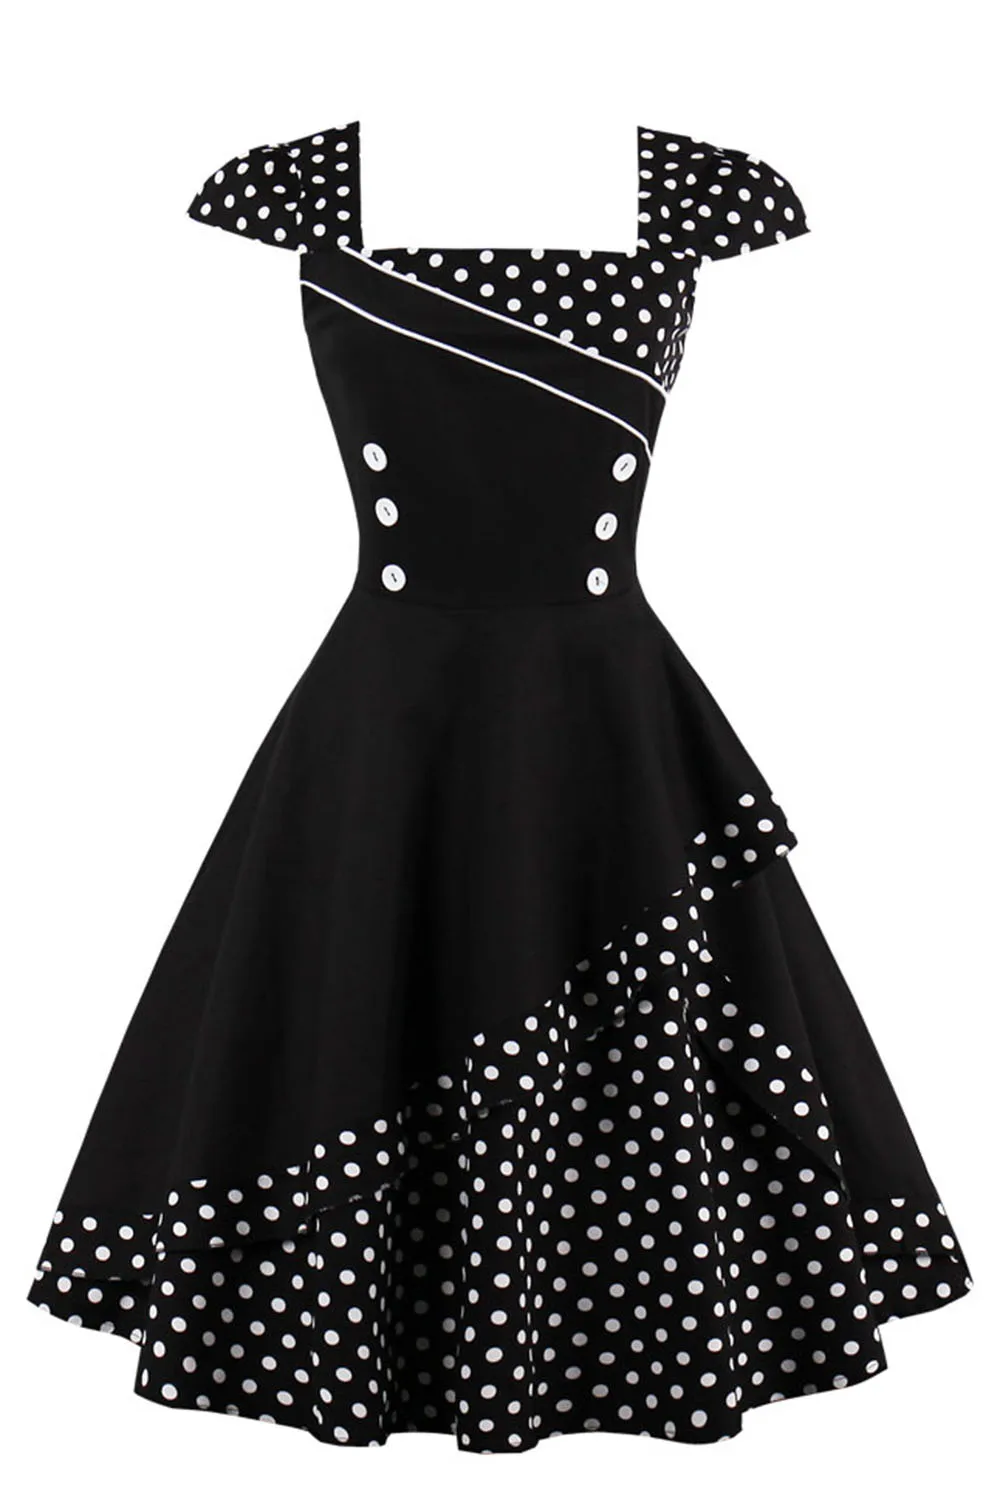 MisShow женское платье в крапинку Винтажные платья в стиле рокабилли Черные платья с пуговицами в 50 60 годы Плюс размеры S-4XL Платья для вечеринок